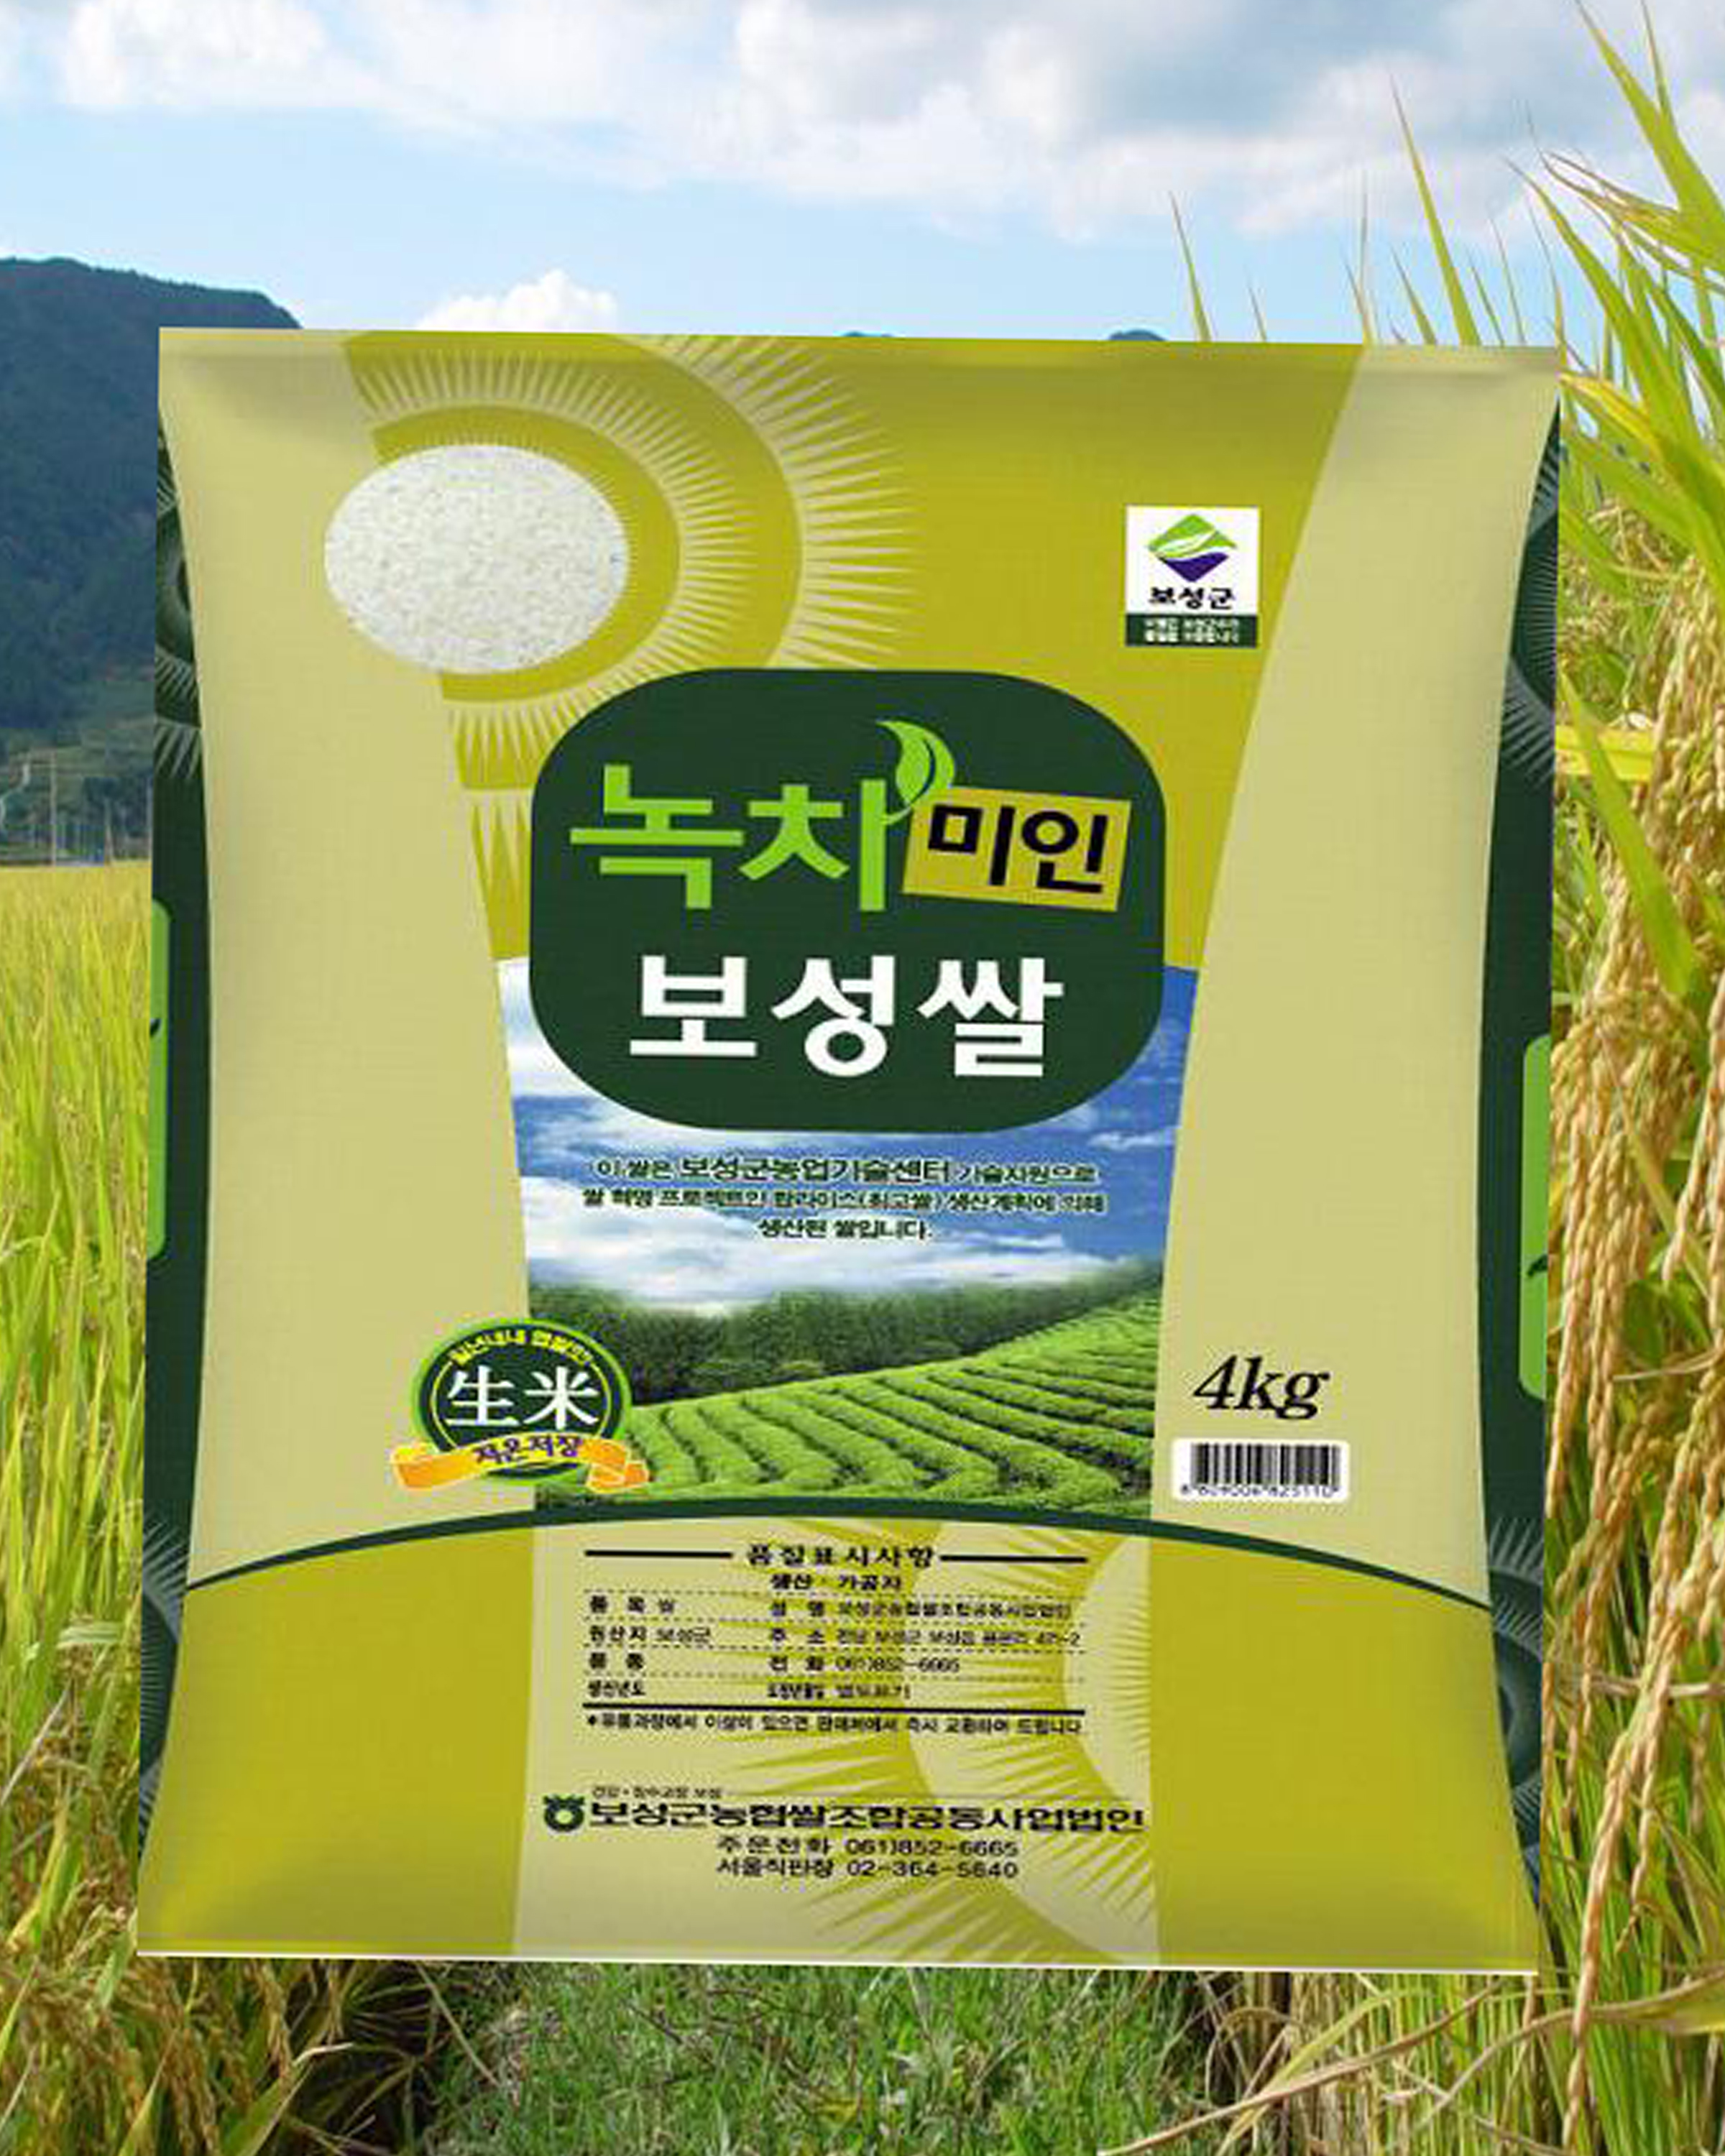 2. 녹차미인보성쌀 (2).jpg